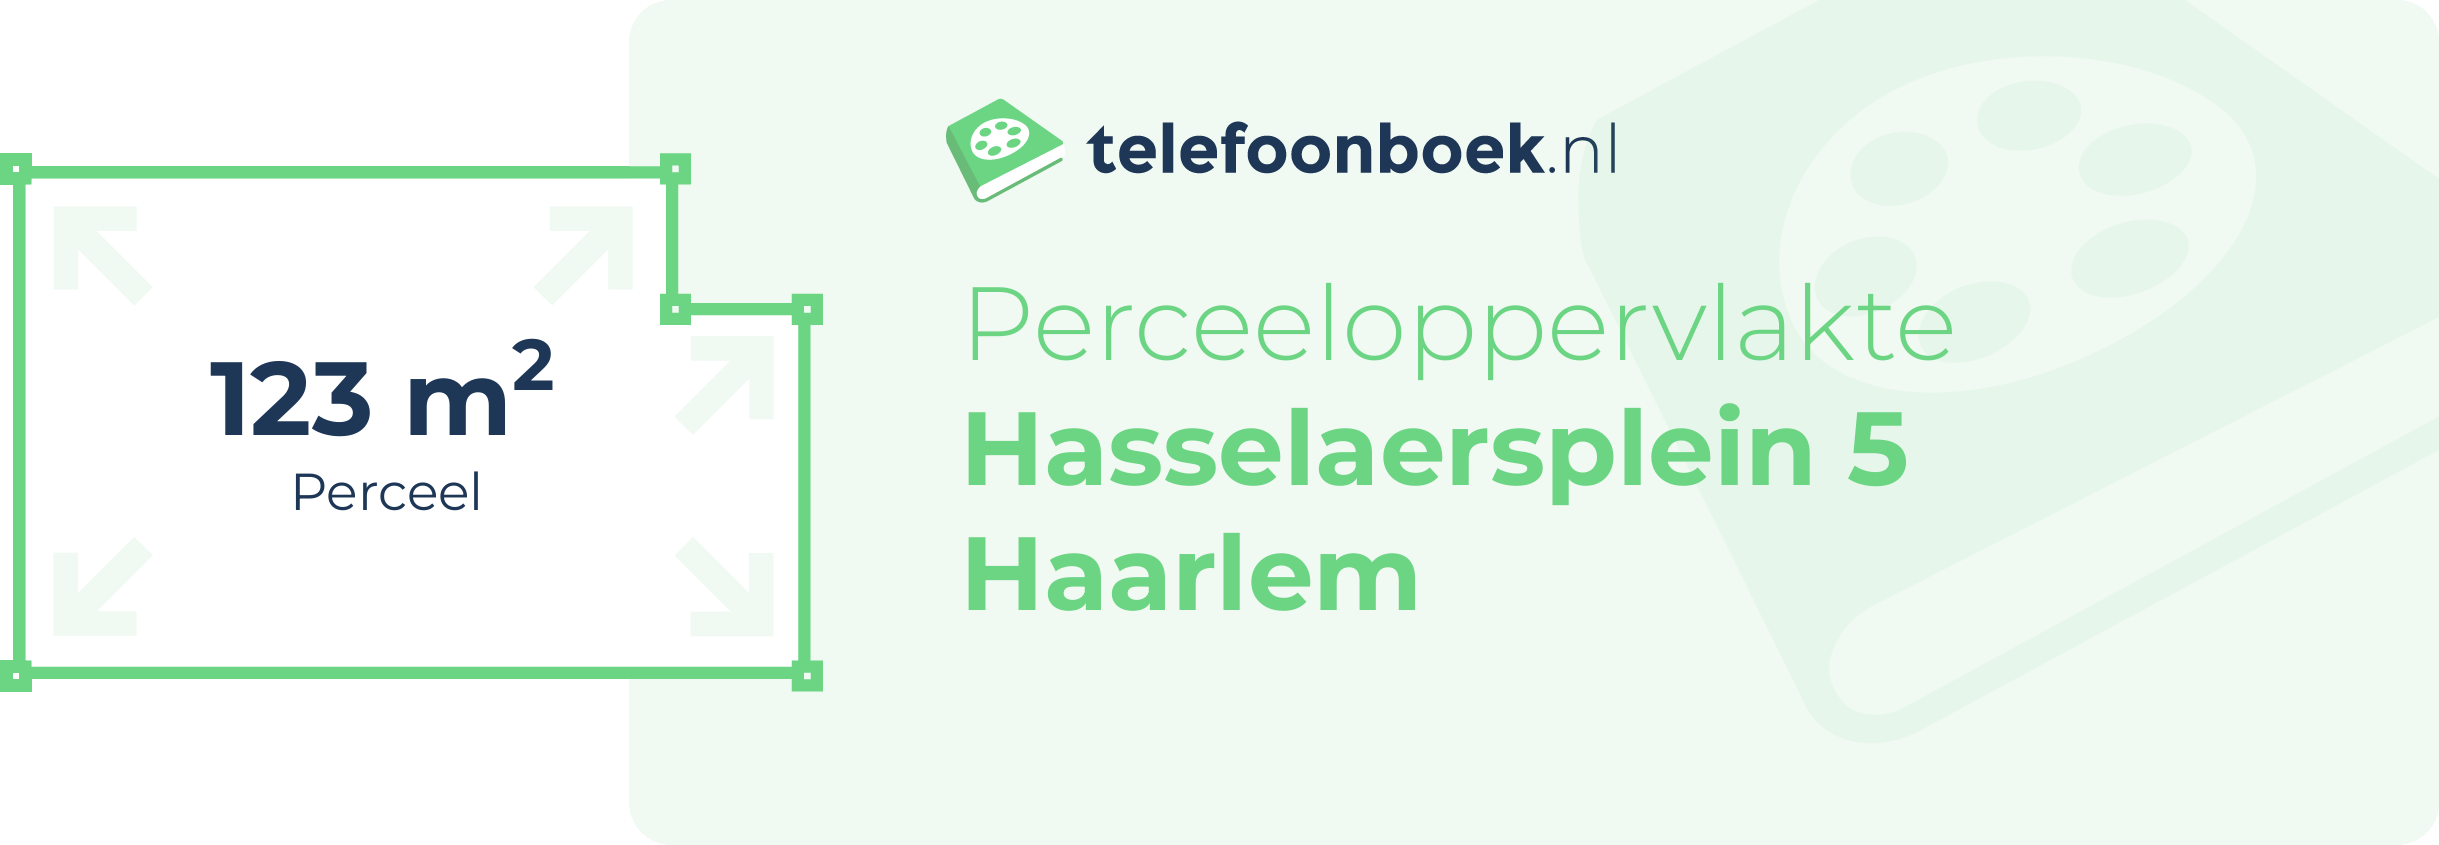 Perceeloppervlakte Hasselaersplein 5 Haarlem